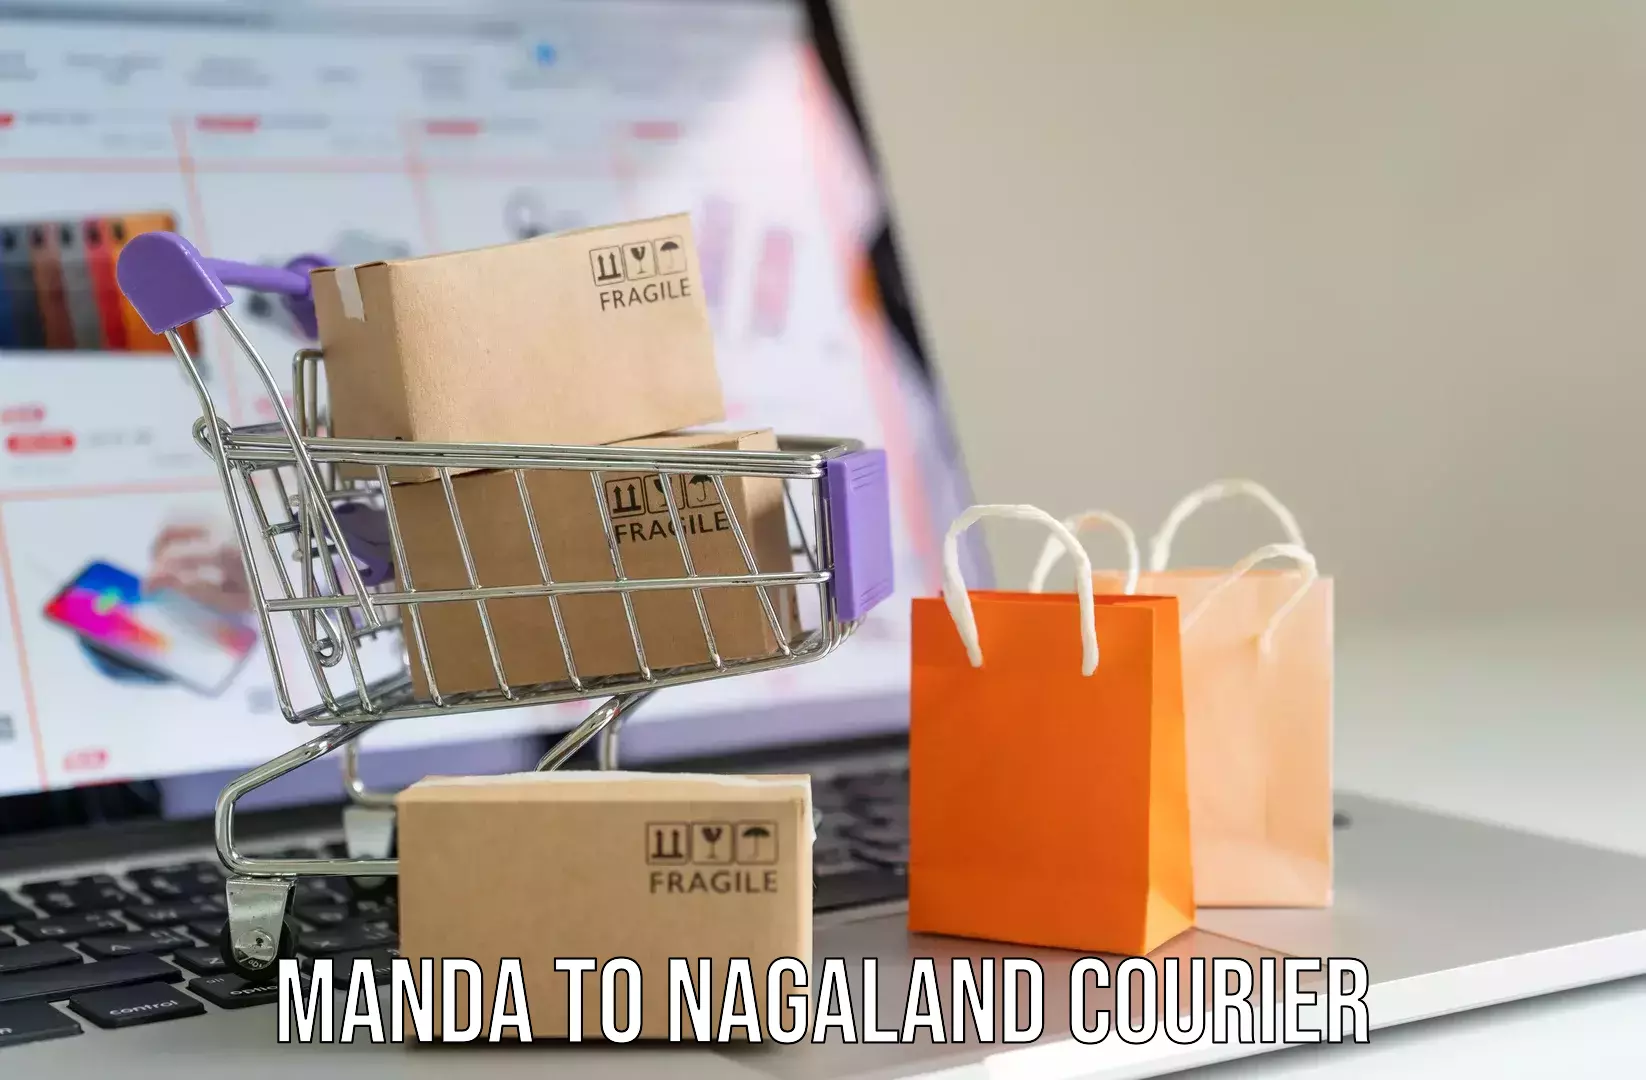 Luggage transit service Manda to Nagaland